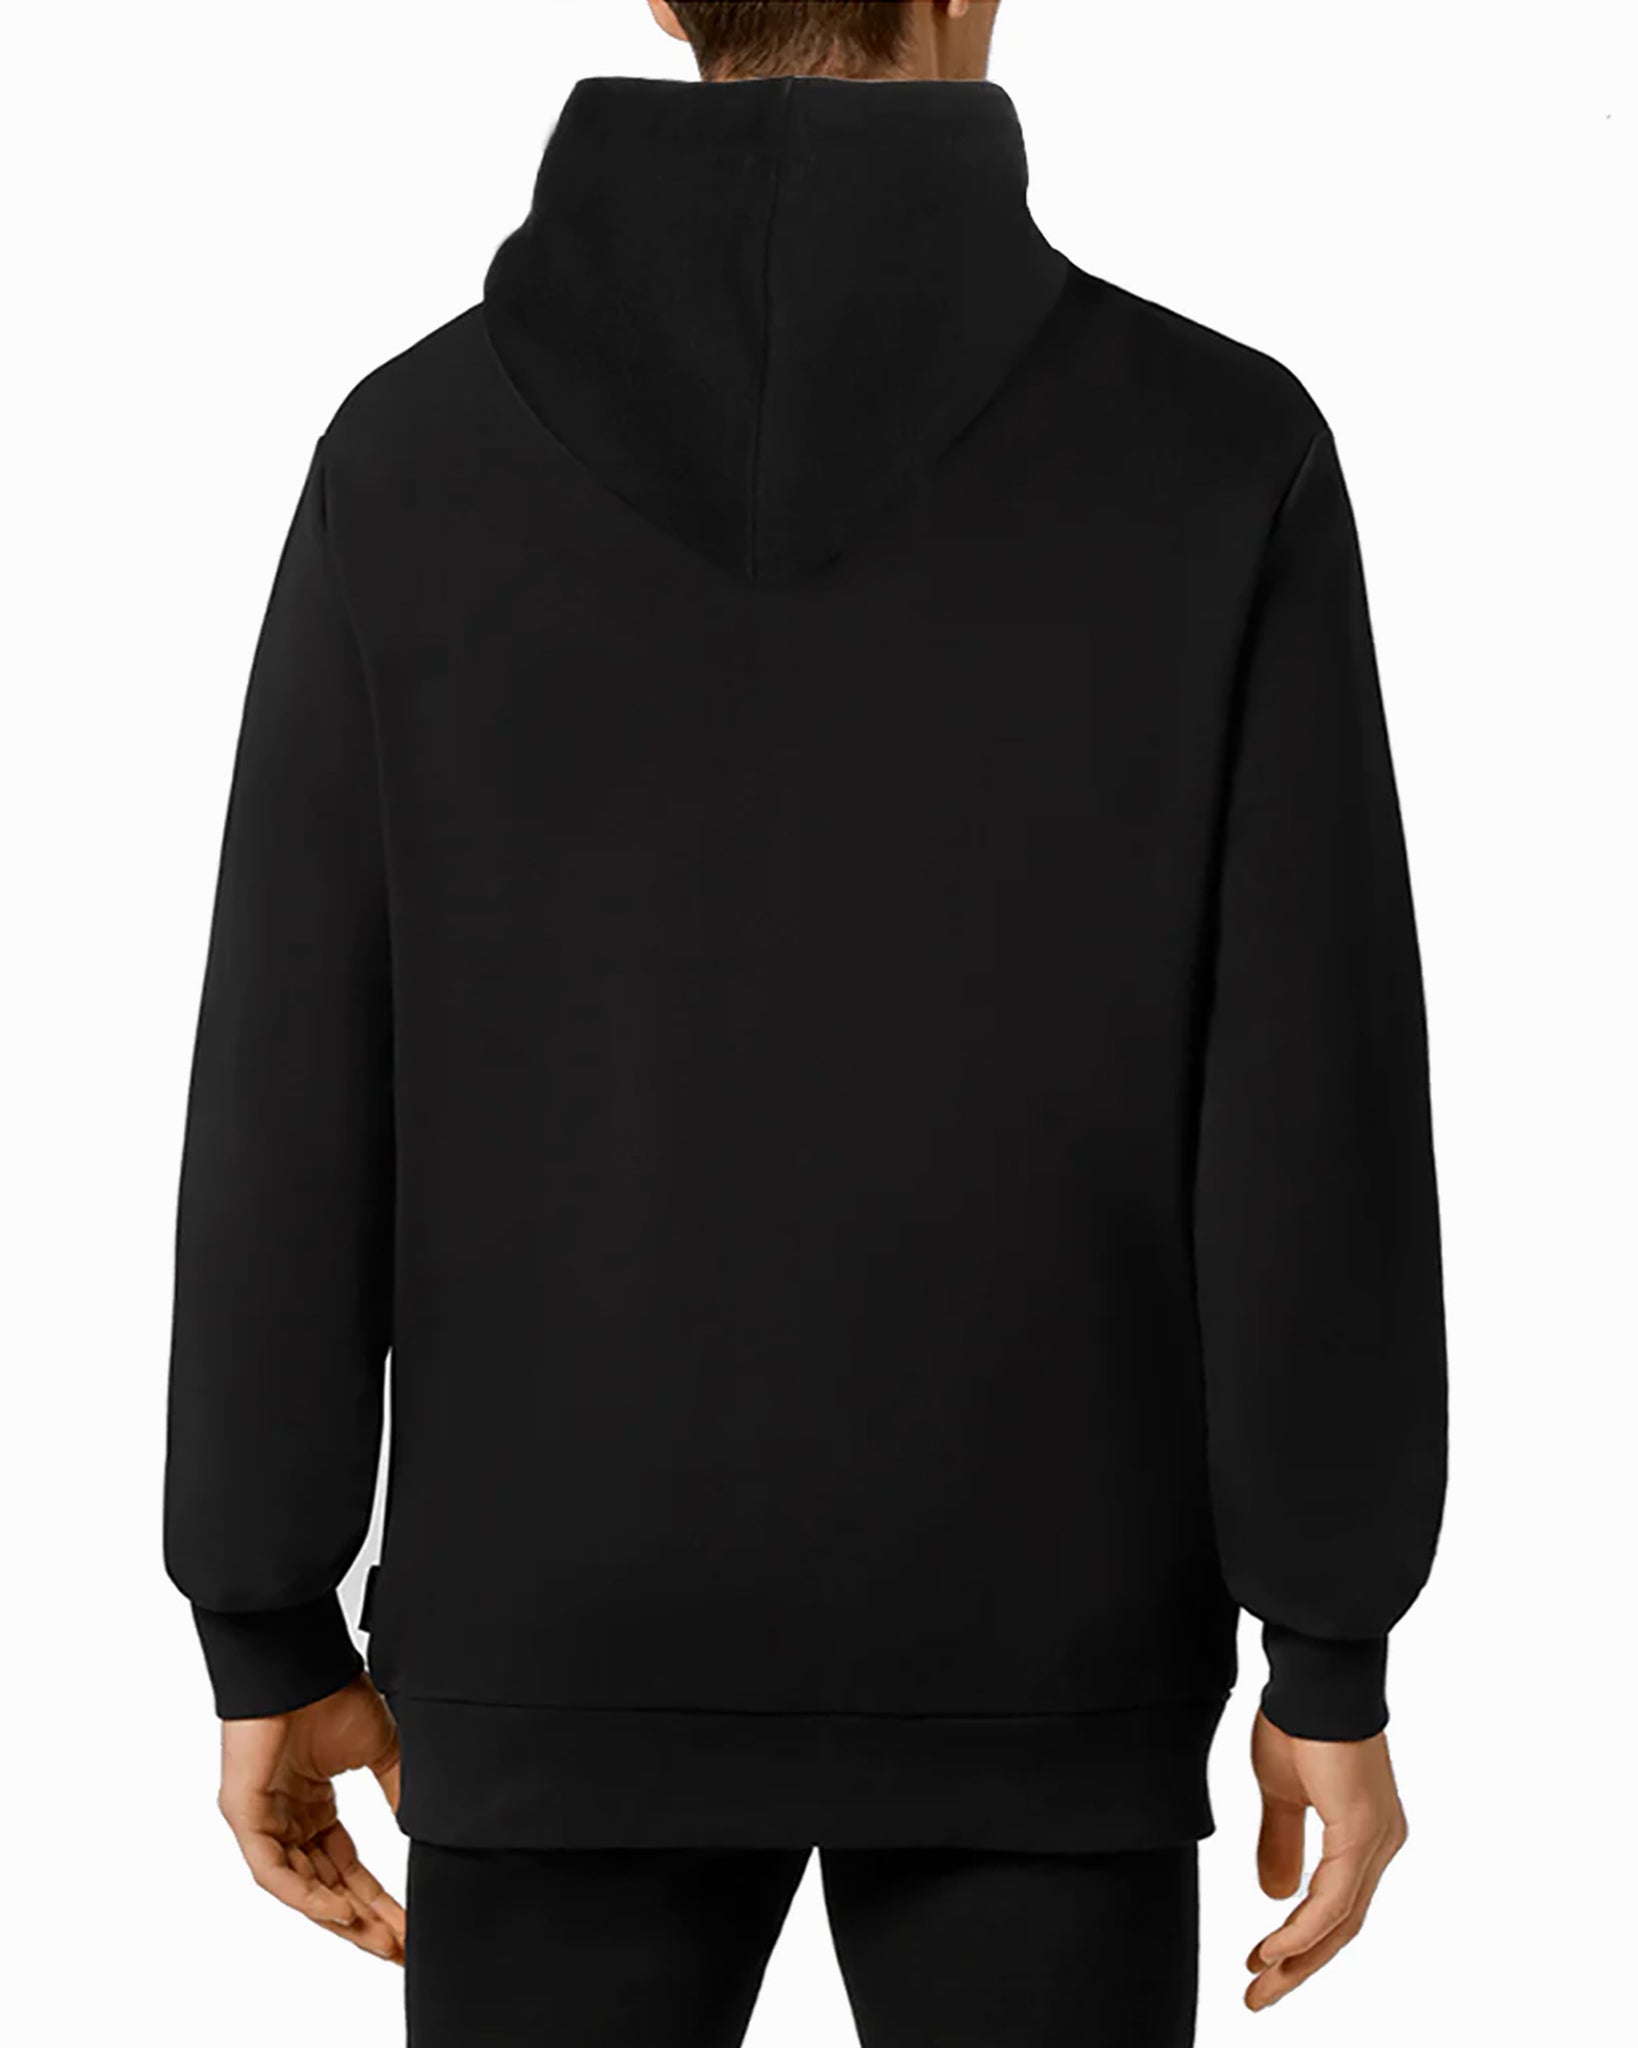 Men\'s Hoodies & Sweatshirts Top Store Store The Gun® Gun Top Official – 